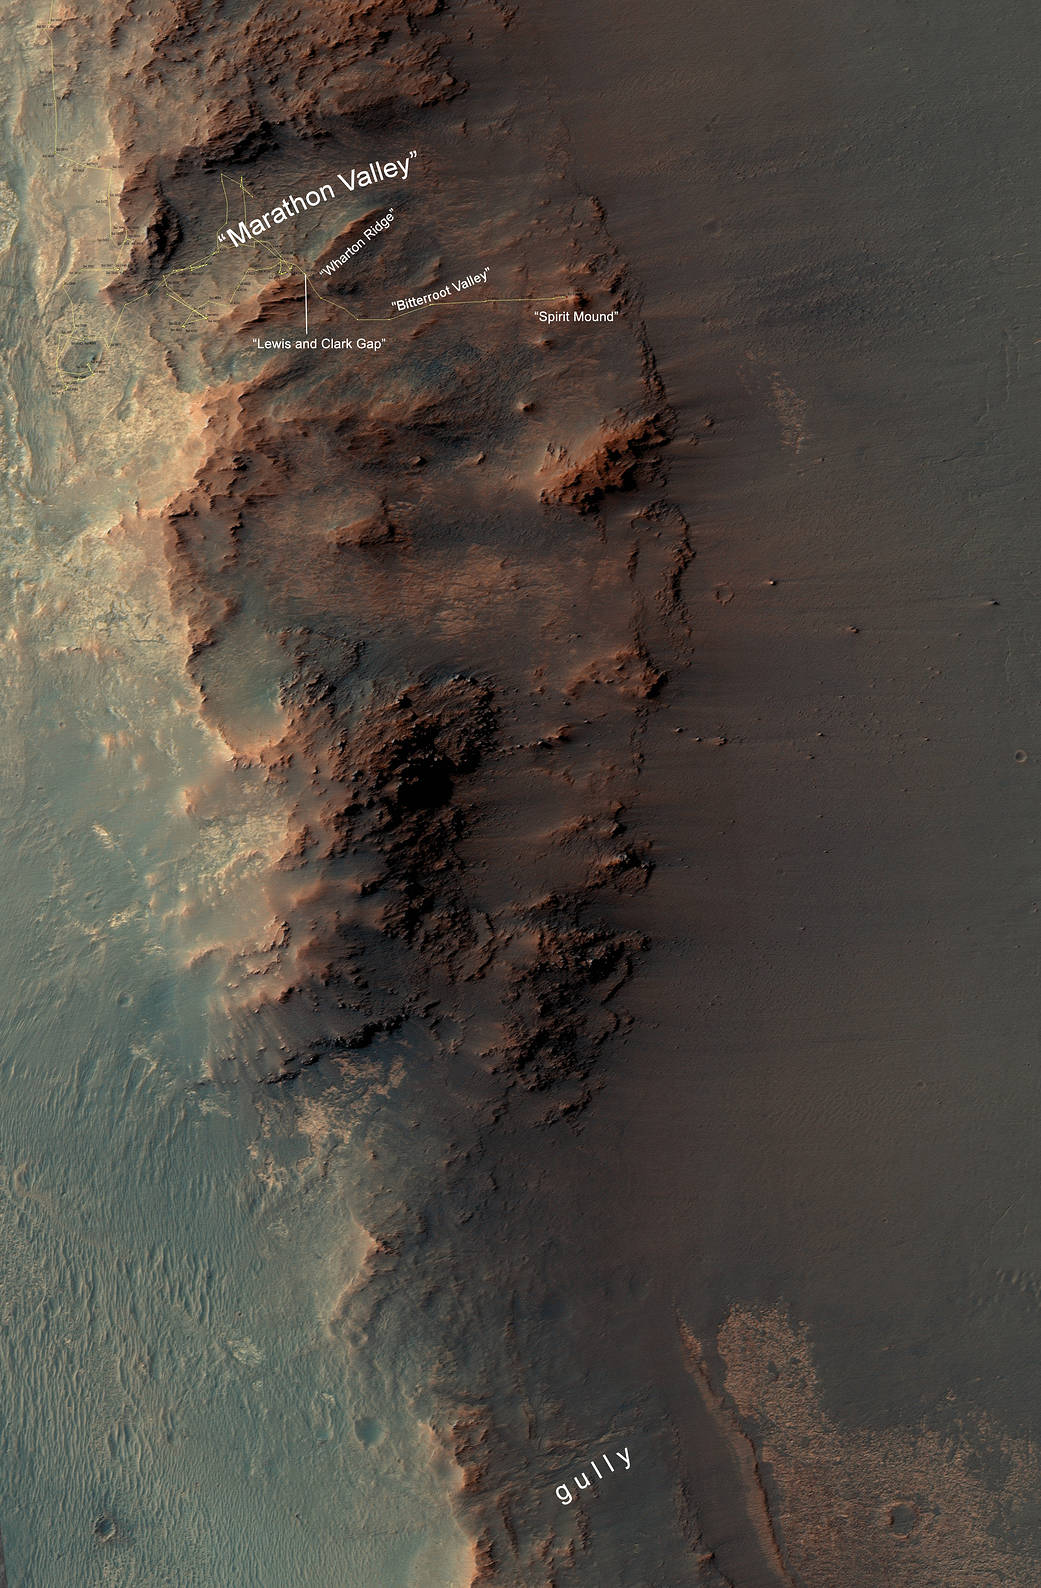 "Marathon Valley" area on Mars